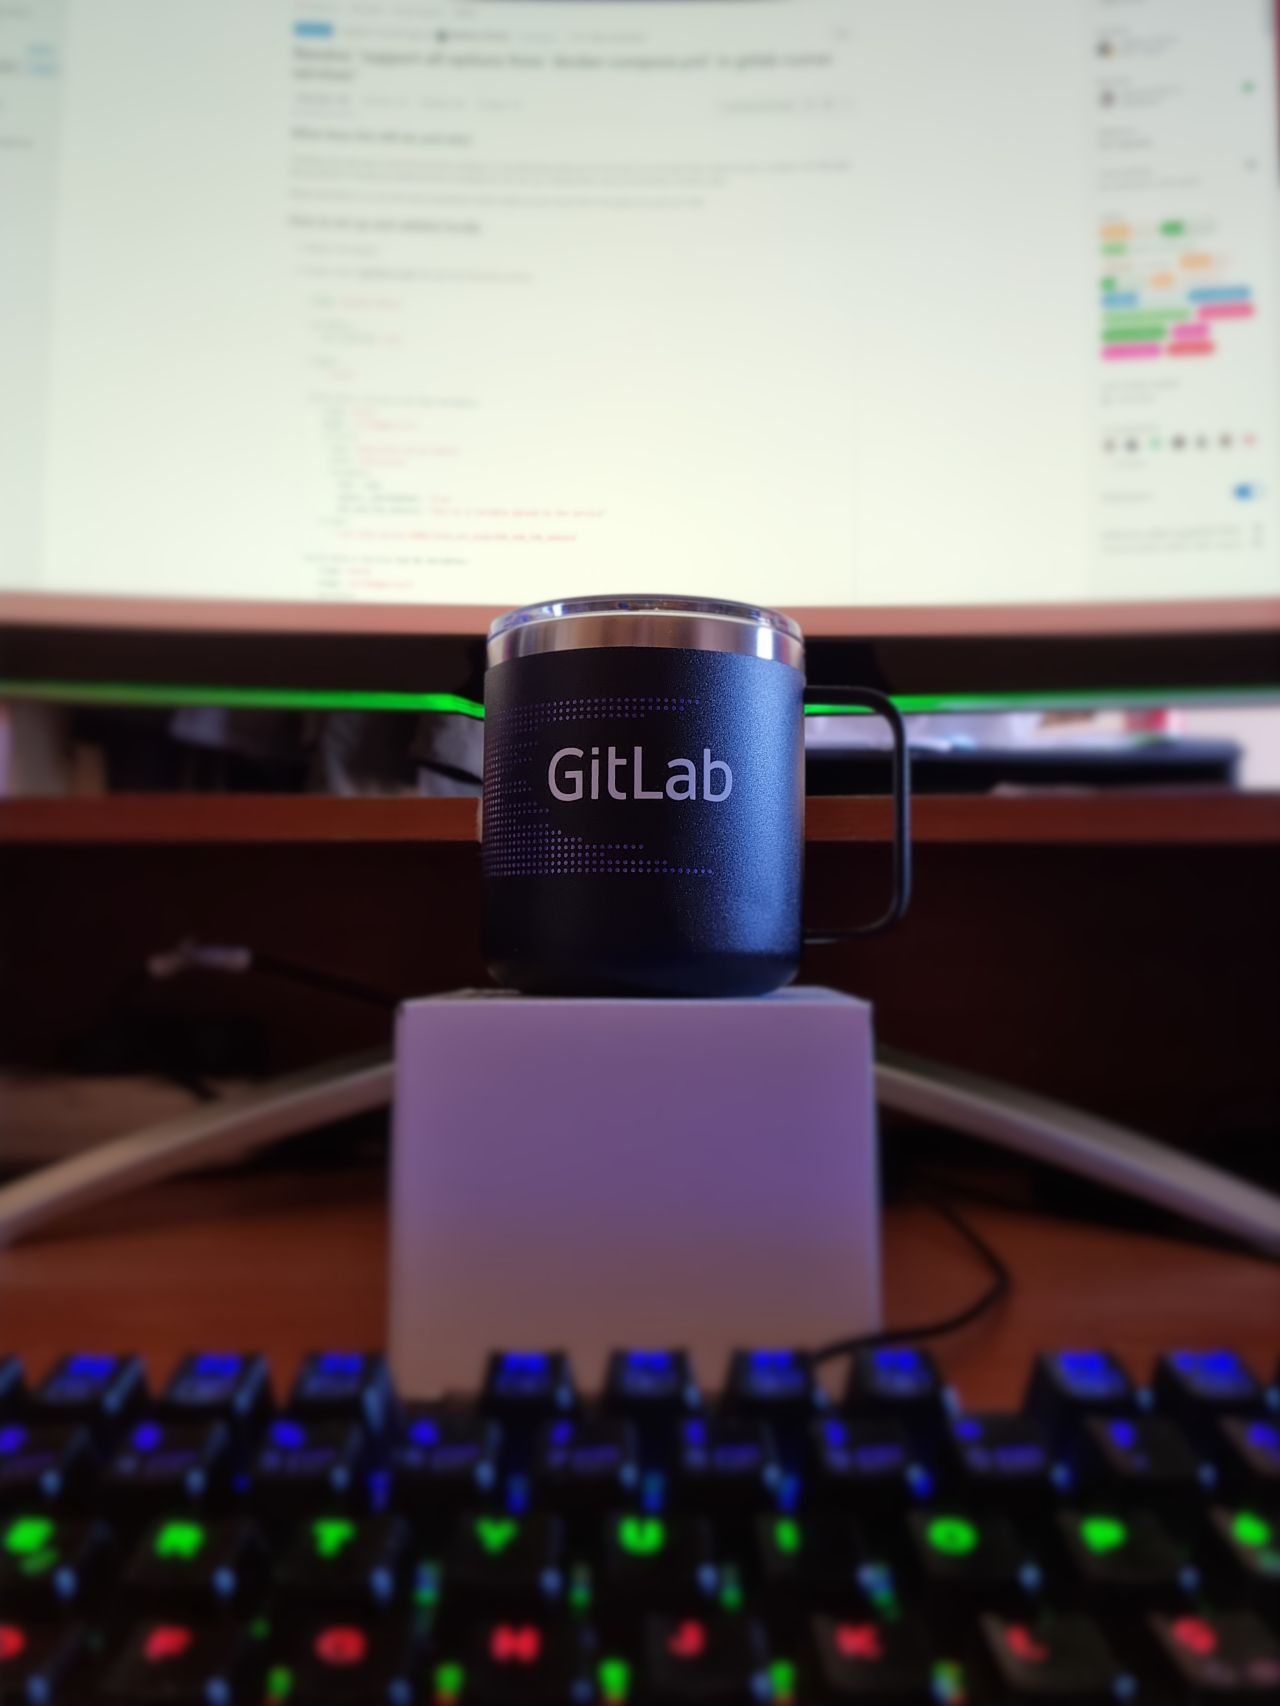 My shiny GitLab mug